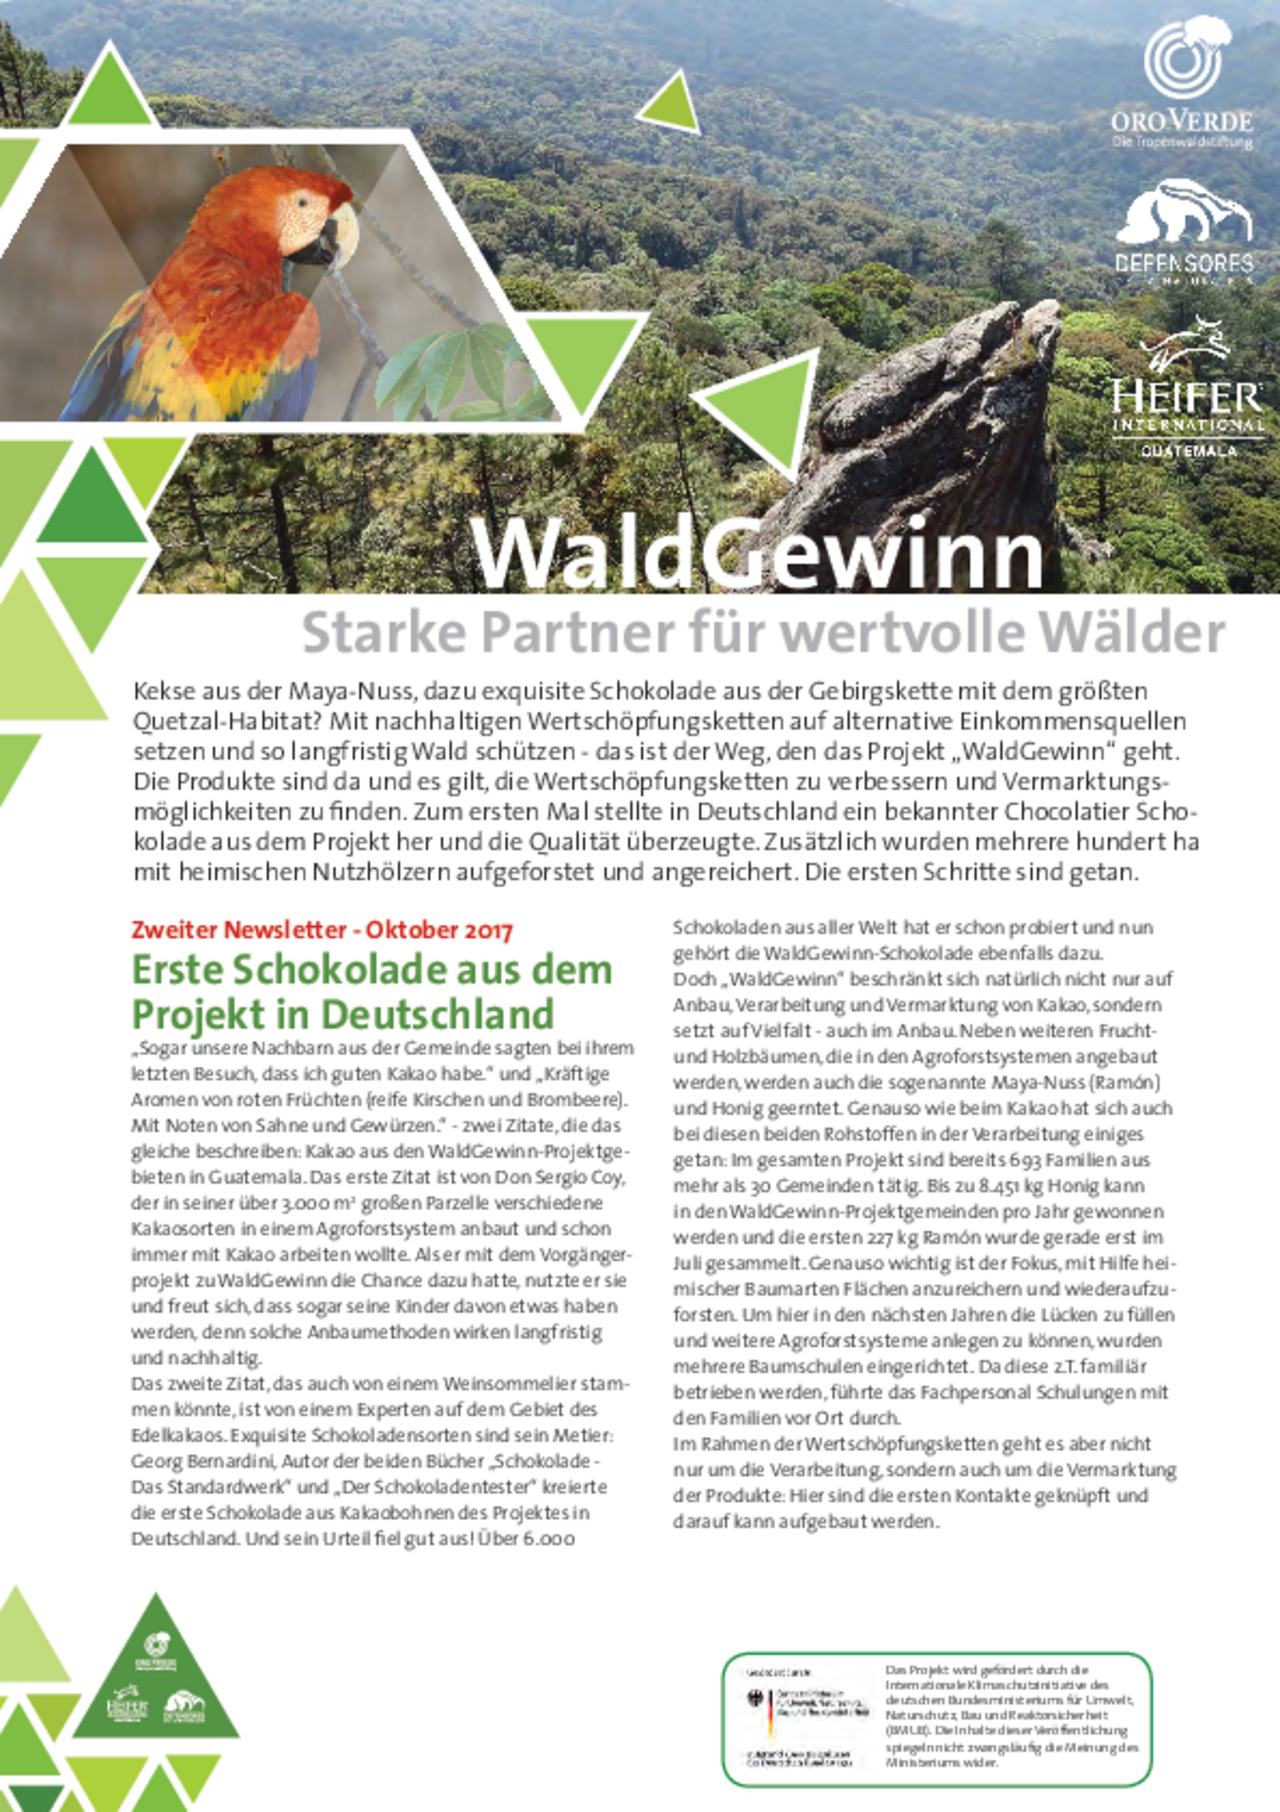 WaldGewinn-Fortschritte-Nachhaltige Wertschöpfungskette